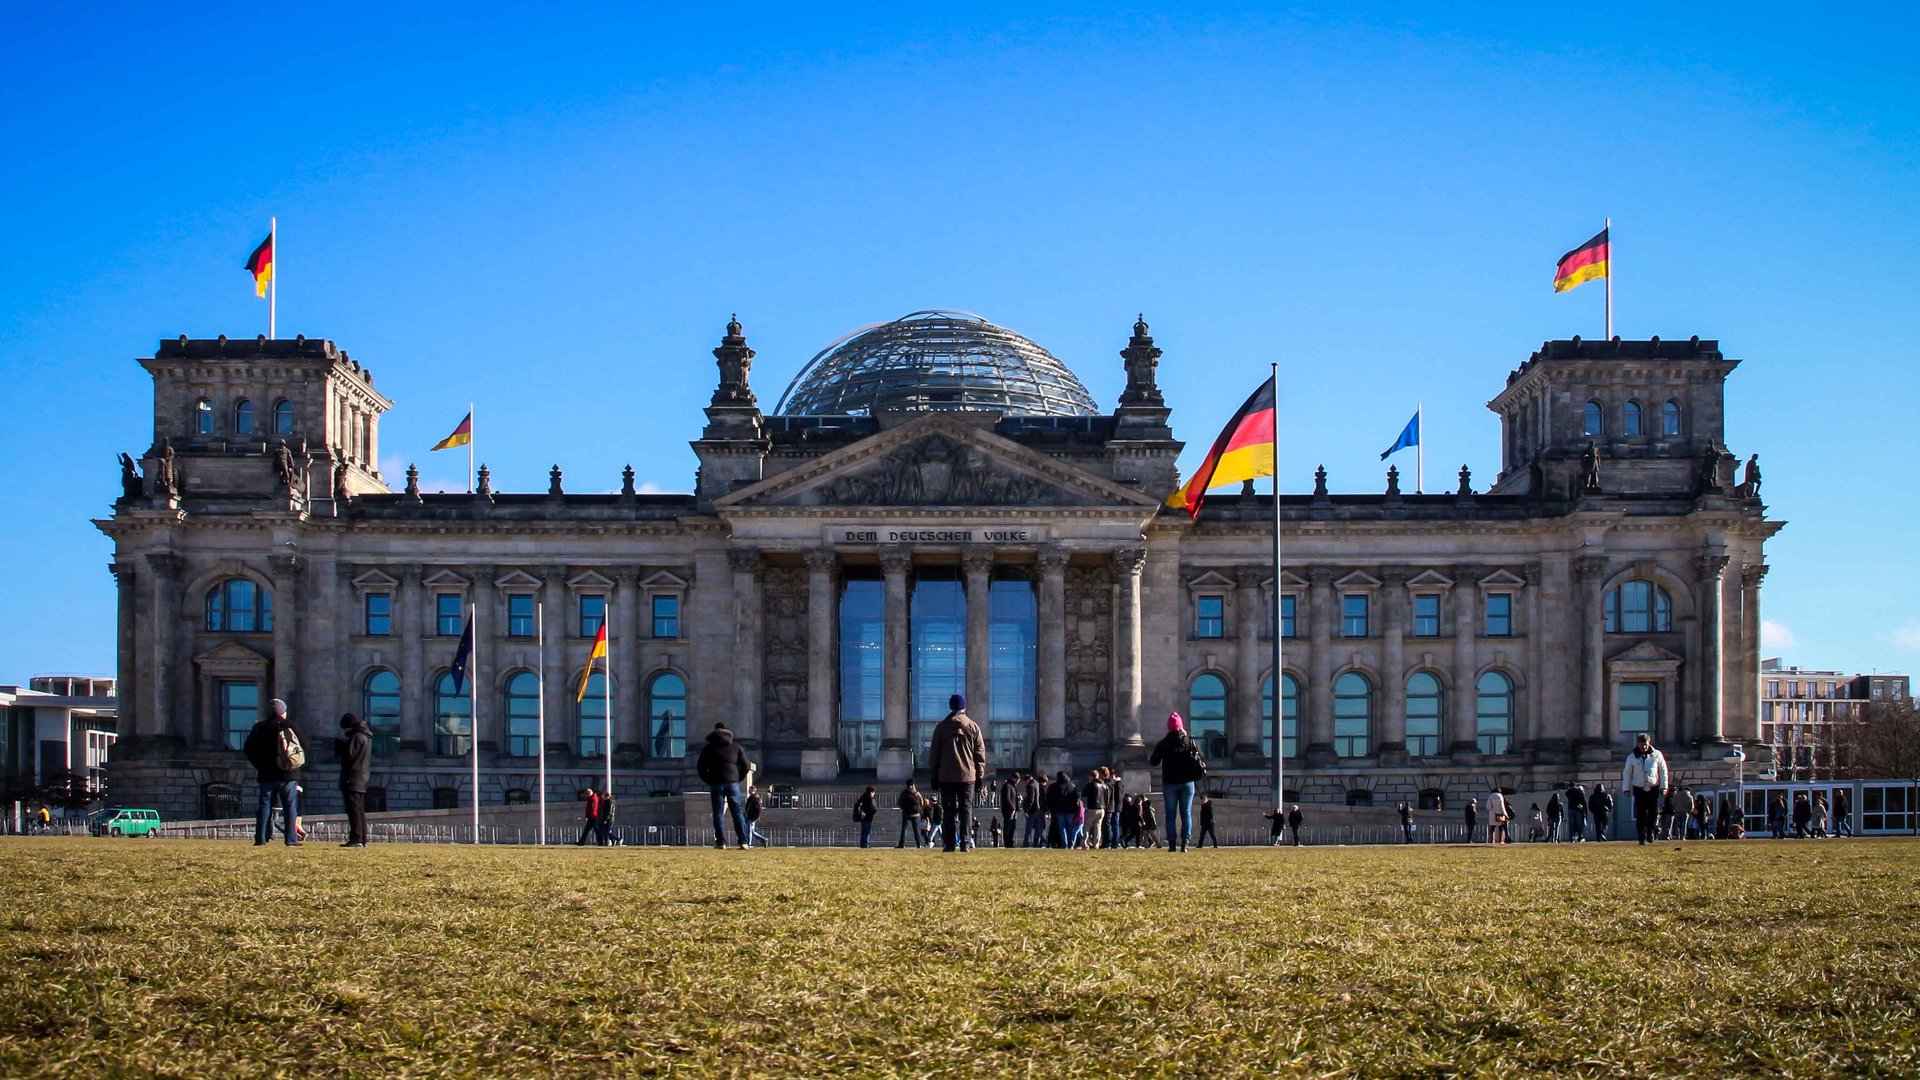 - Reichstag -